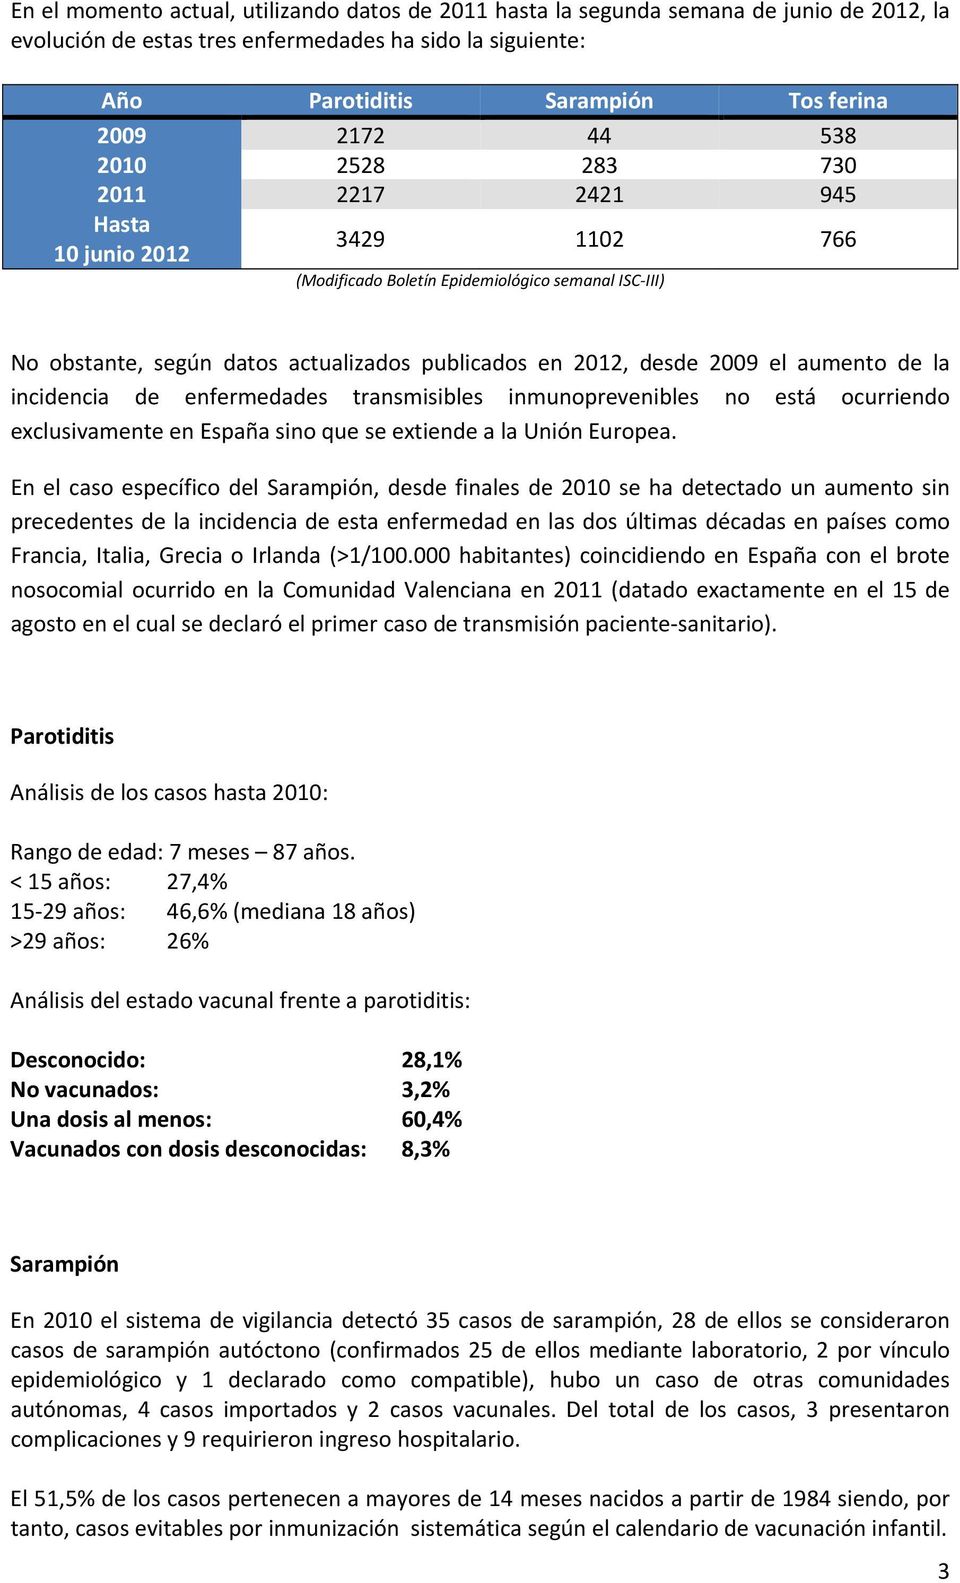 el aumento de la incidencia de enfermedades transmisibles inmunoprevenibles no está ocurriendo exclusivamente en España sino que se extiende a la Unión Europea.